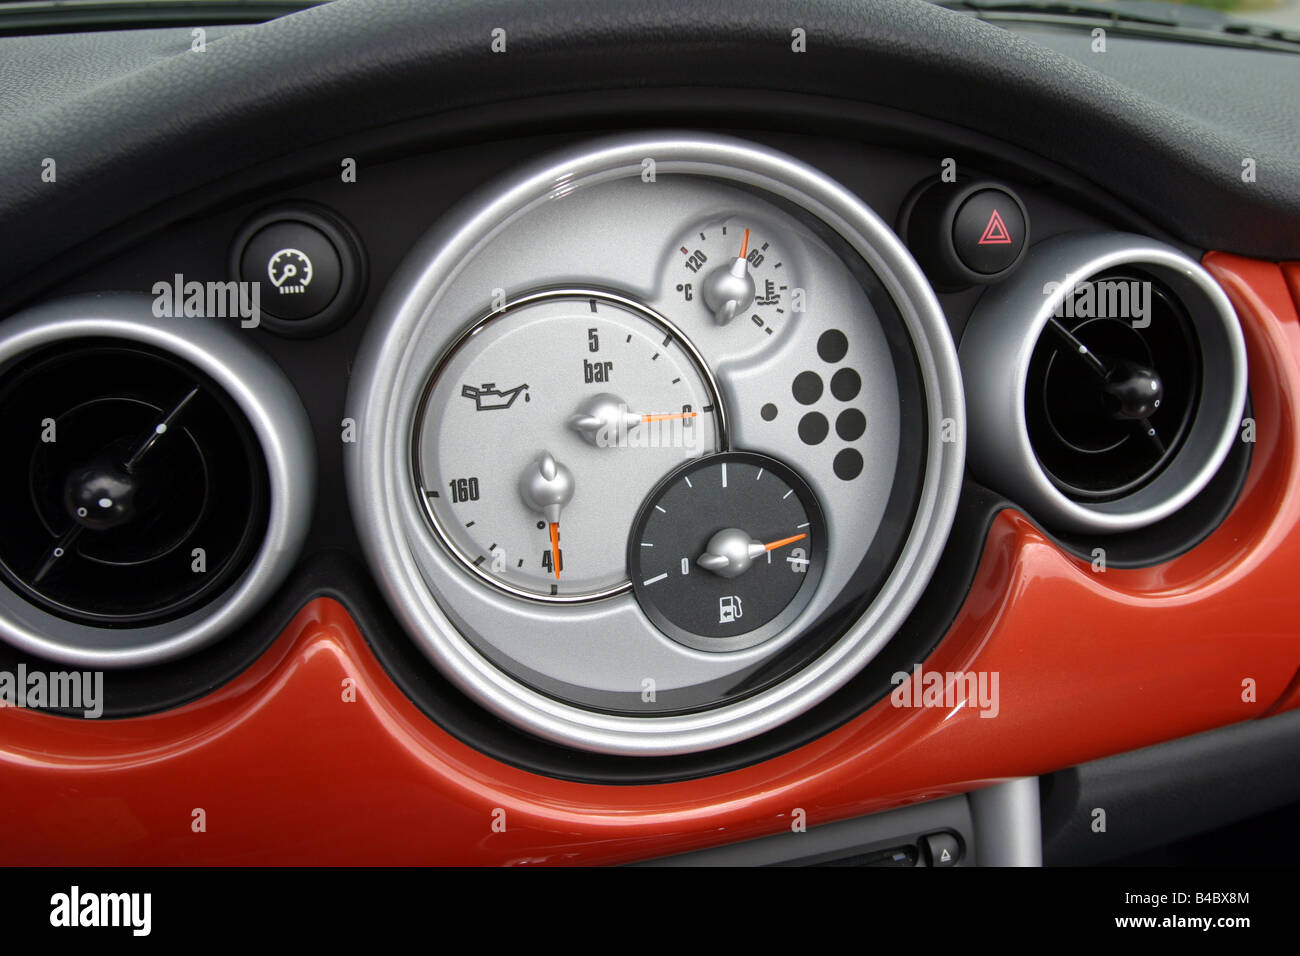 https://c8.alamy.com/compde/b4bx8m/auto-bmw-mini-cooper-cabrio-modell-jahr-2004-rot-innen-anzeigen-innenansicht-cockpit-technikzubehor-zubehor-b4bx8m.jpg